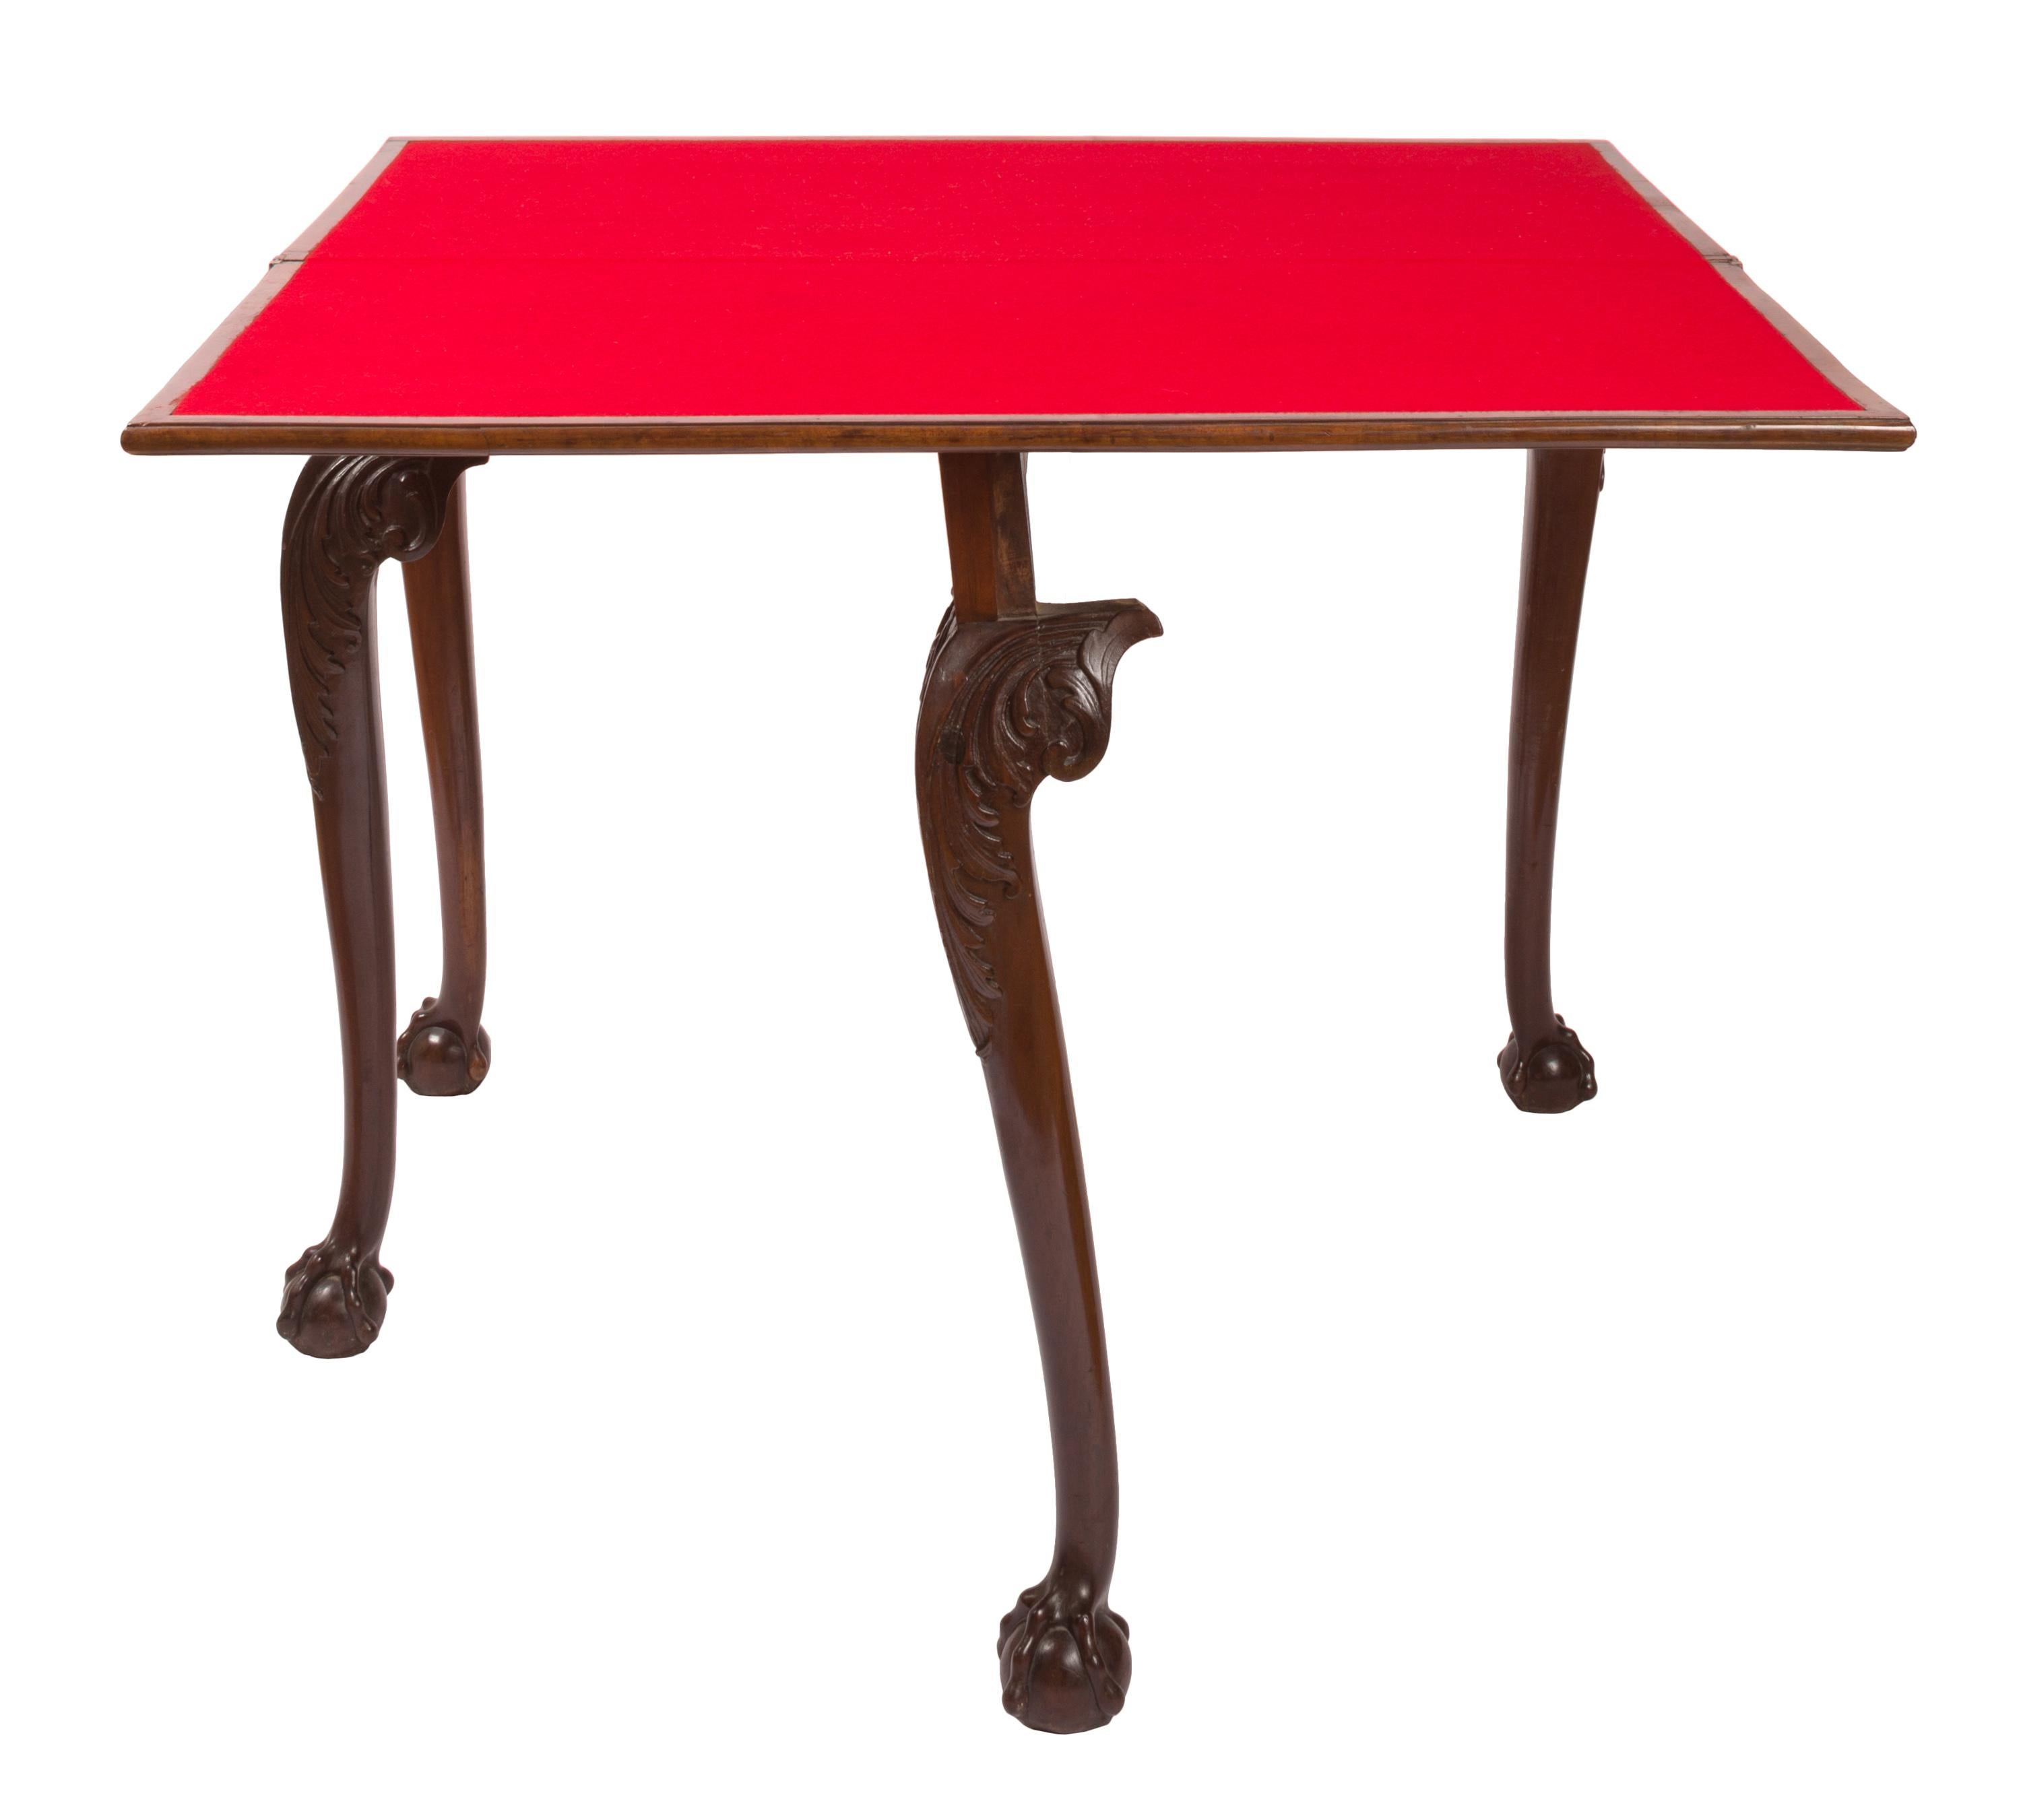 Table à cartes pivotante et rabattable de style Chippendale du XIXe siècle, qui se transforme astucieusement d'une table d'appoint étroite en une surface de jeu carrée recouverte de feutre rouge. Les pieds cabriole, fins et élégants, sont décorés de